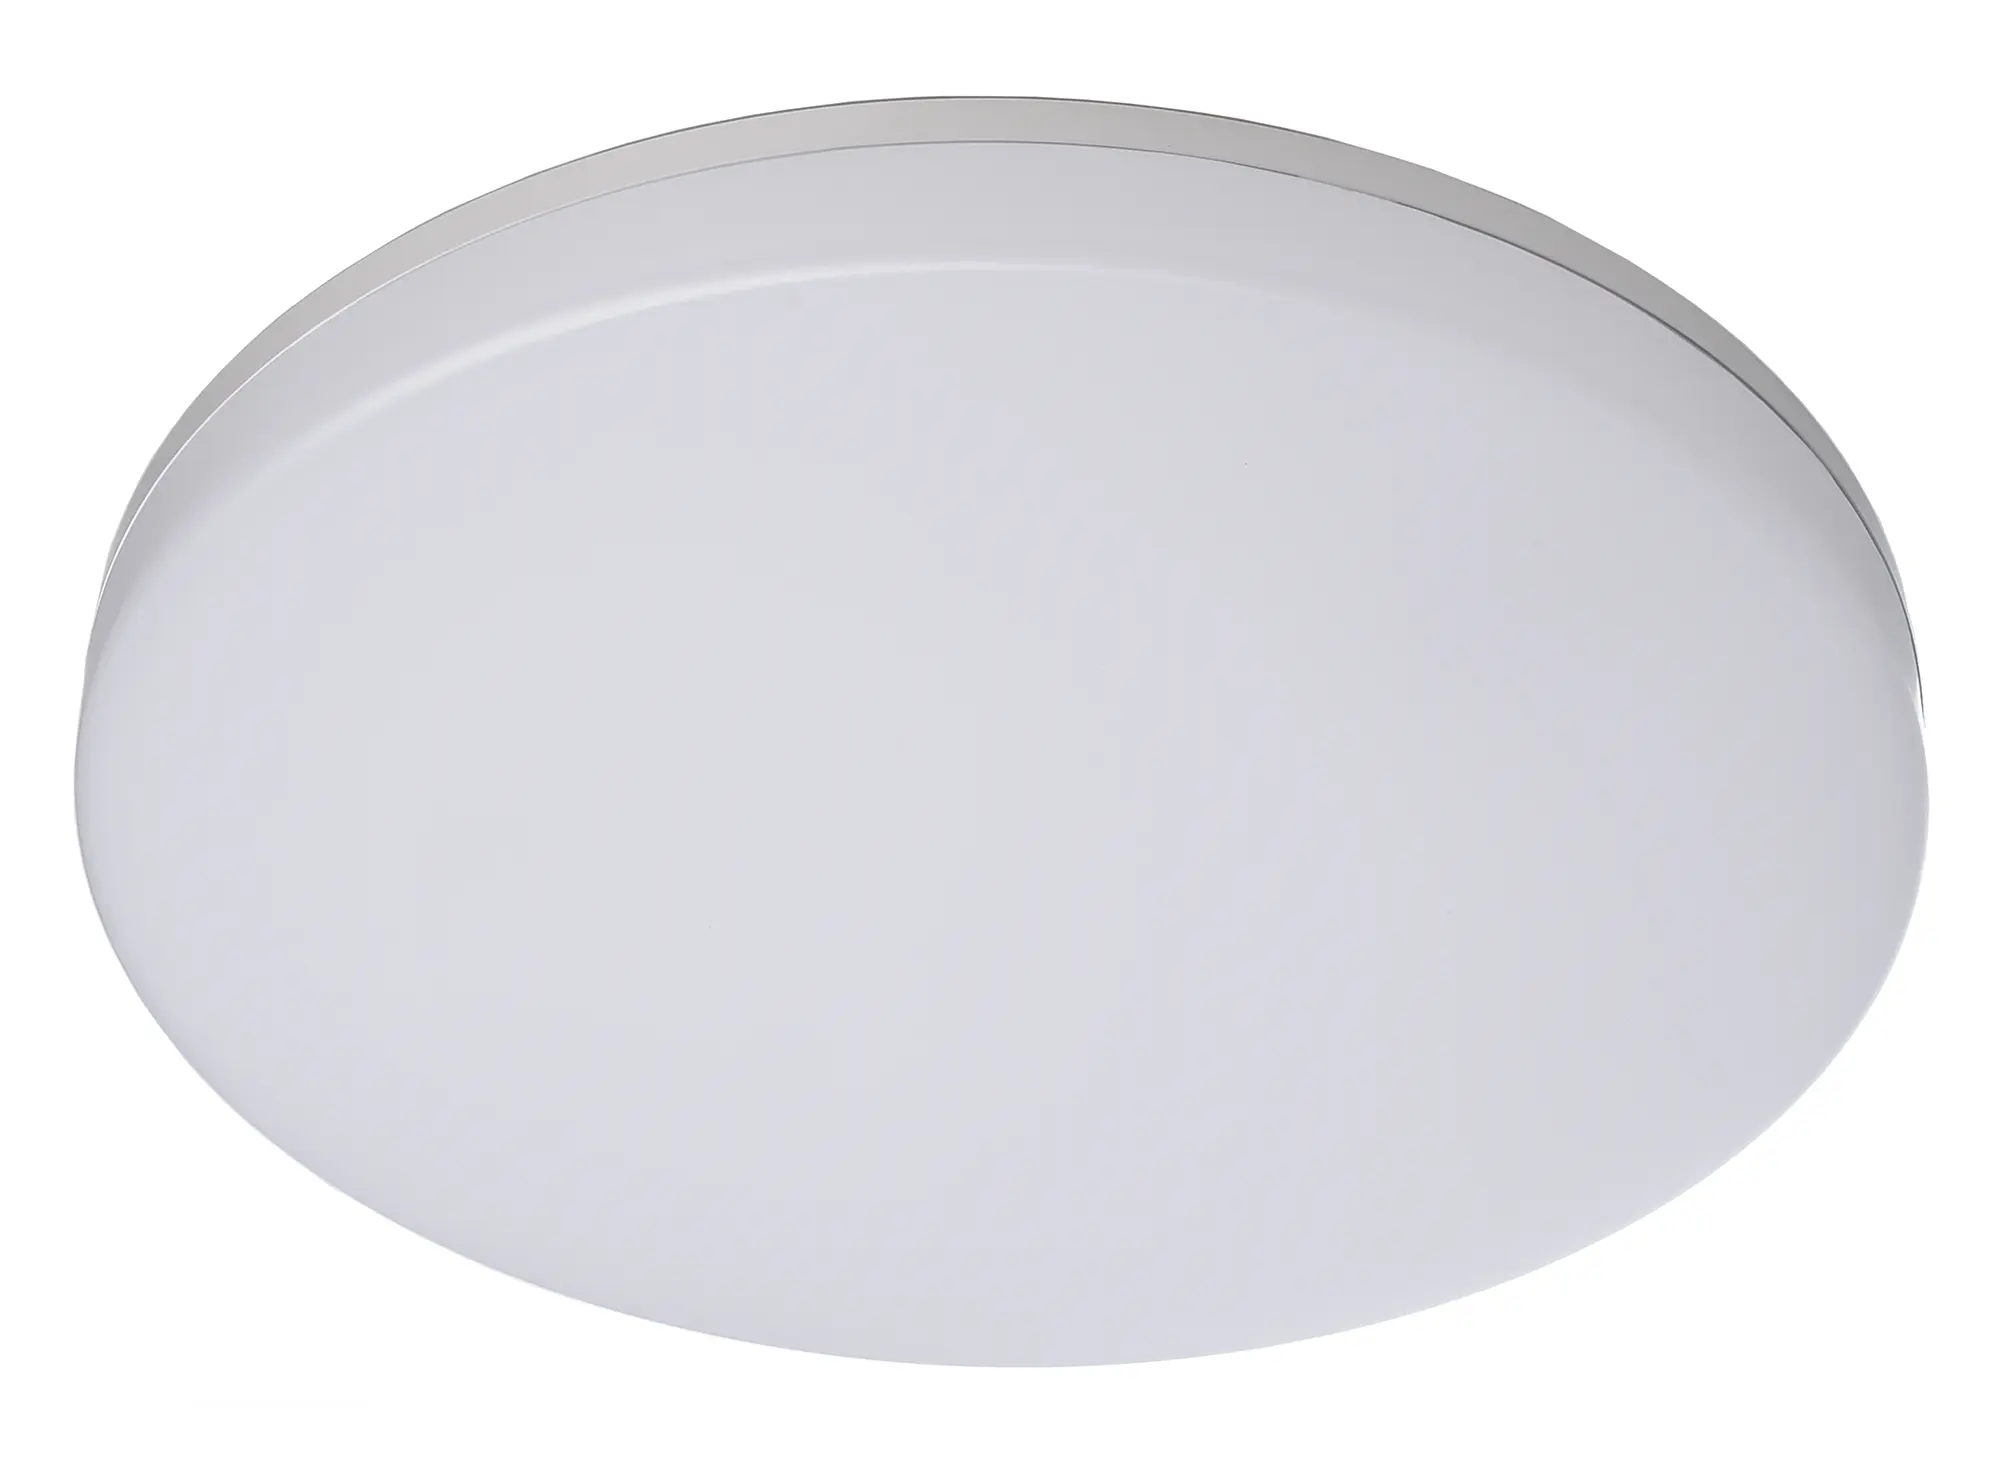 LED-Deckenlampe Altais Deluxe mit Sensor in weiß Ø 33cm